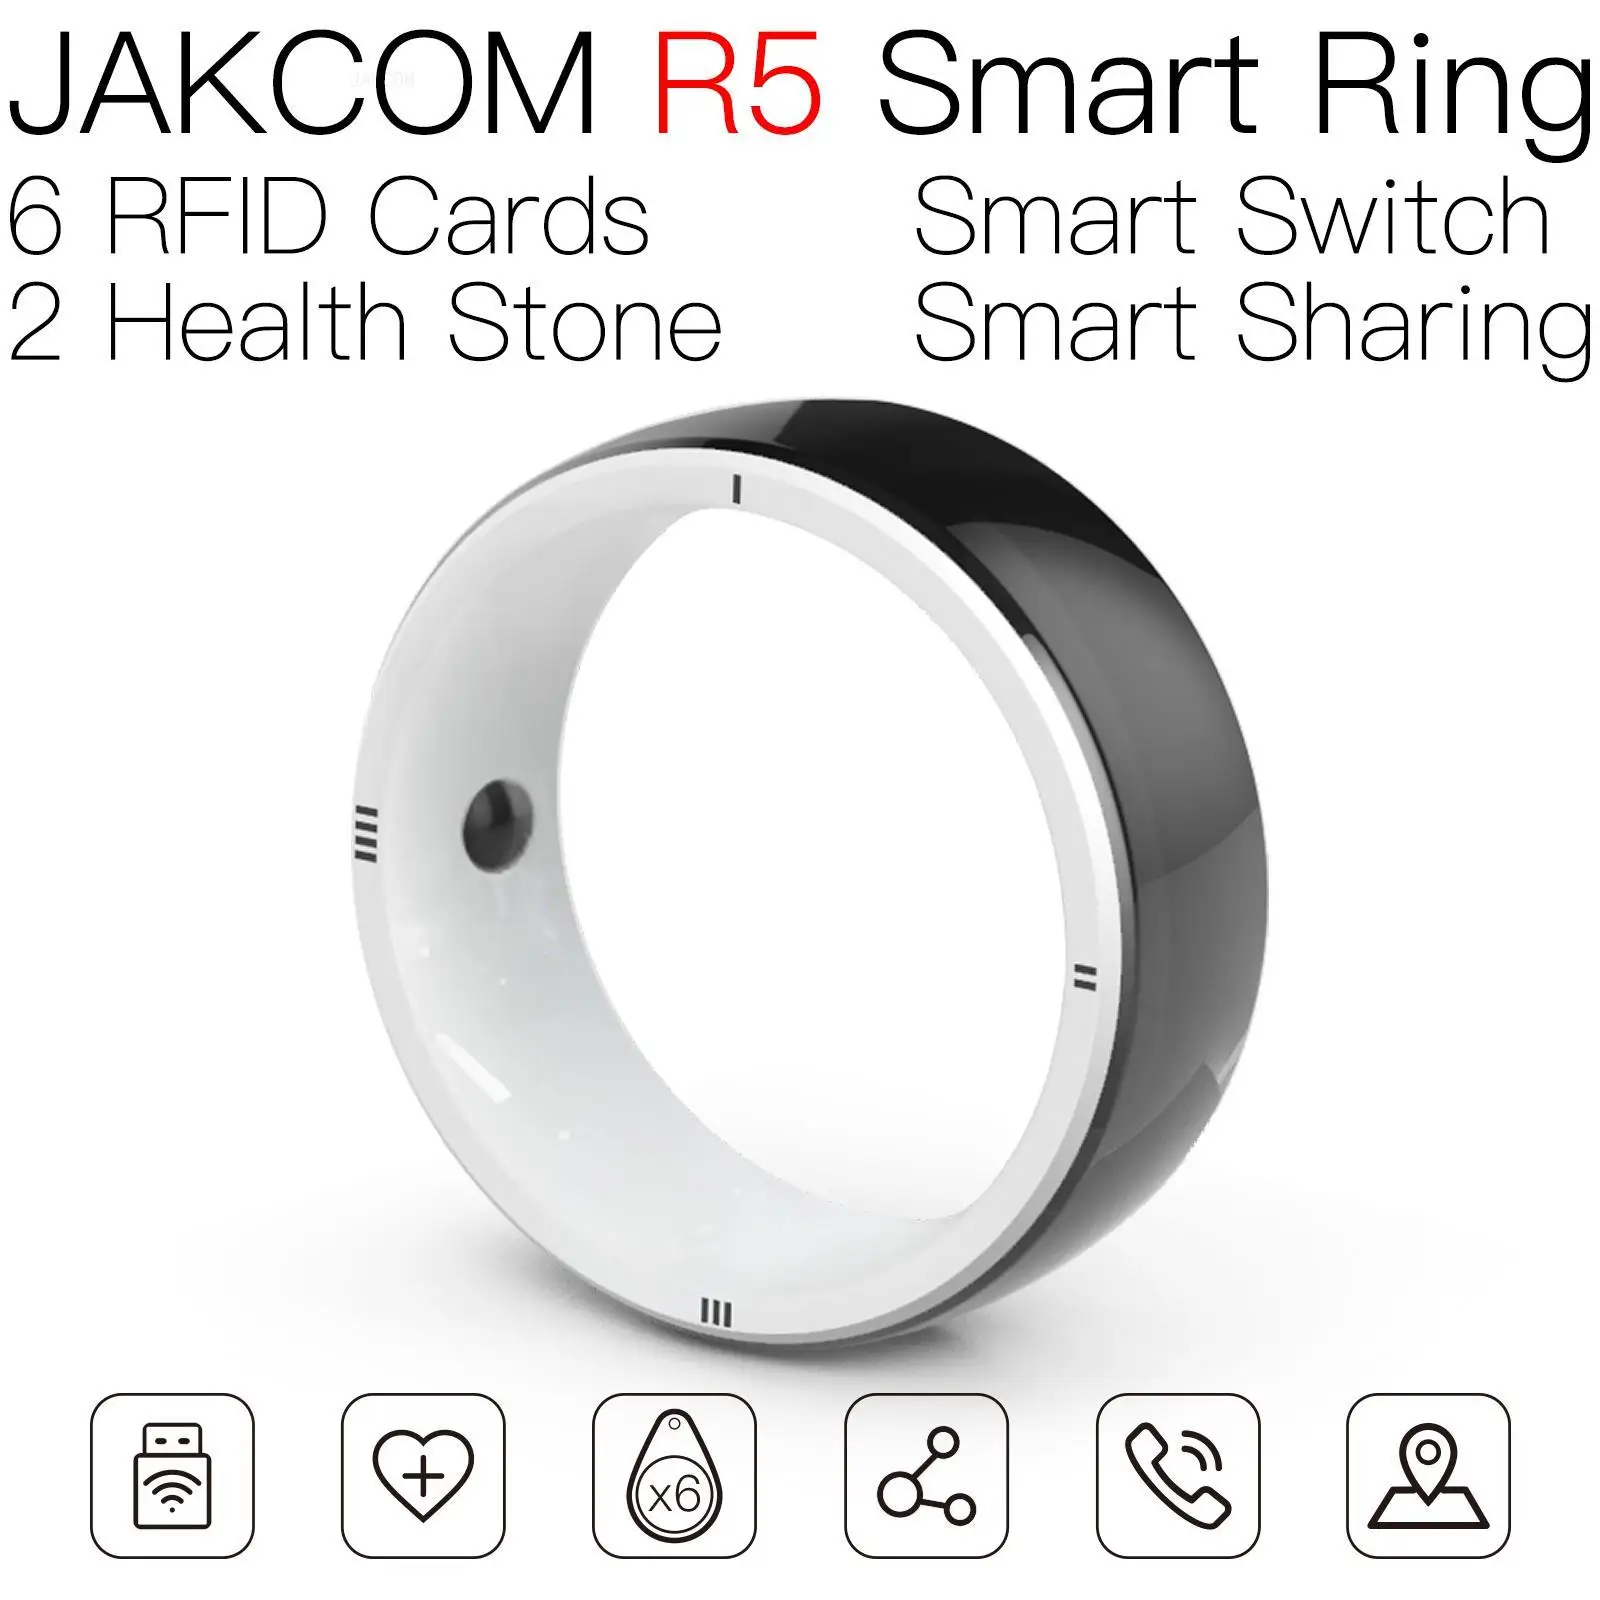 

Умное кольцо JAKCOM R5, лучший подарок с маркировкой, Официальный магазин aomei, чип для животных, gps, кожаная бирка на большое расстояние, декоративный брелок для ключей